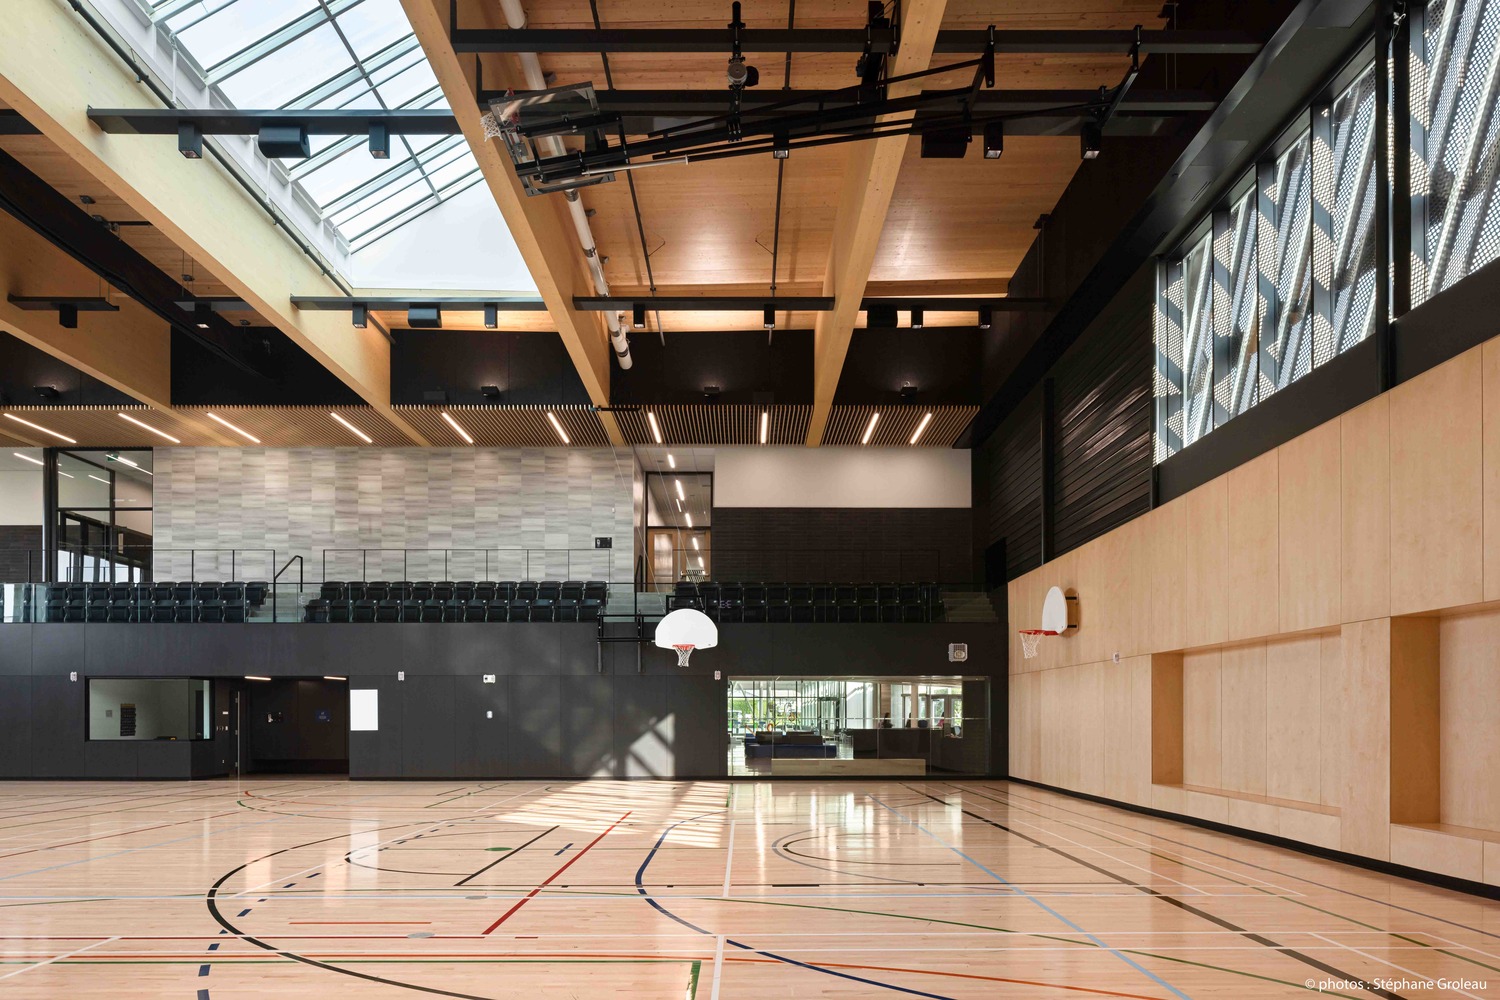 Intérieur d'un gymnase moderne avec terrain de basket, parquet, coin salon et hauts plafonds avec lucarnes.